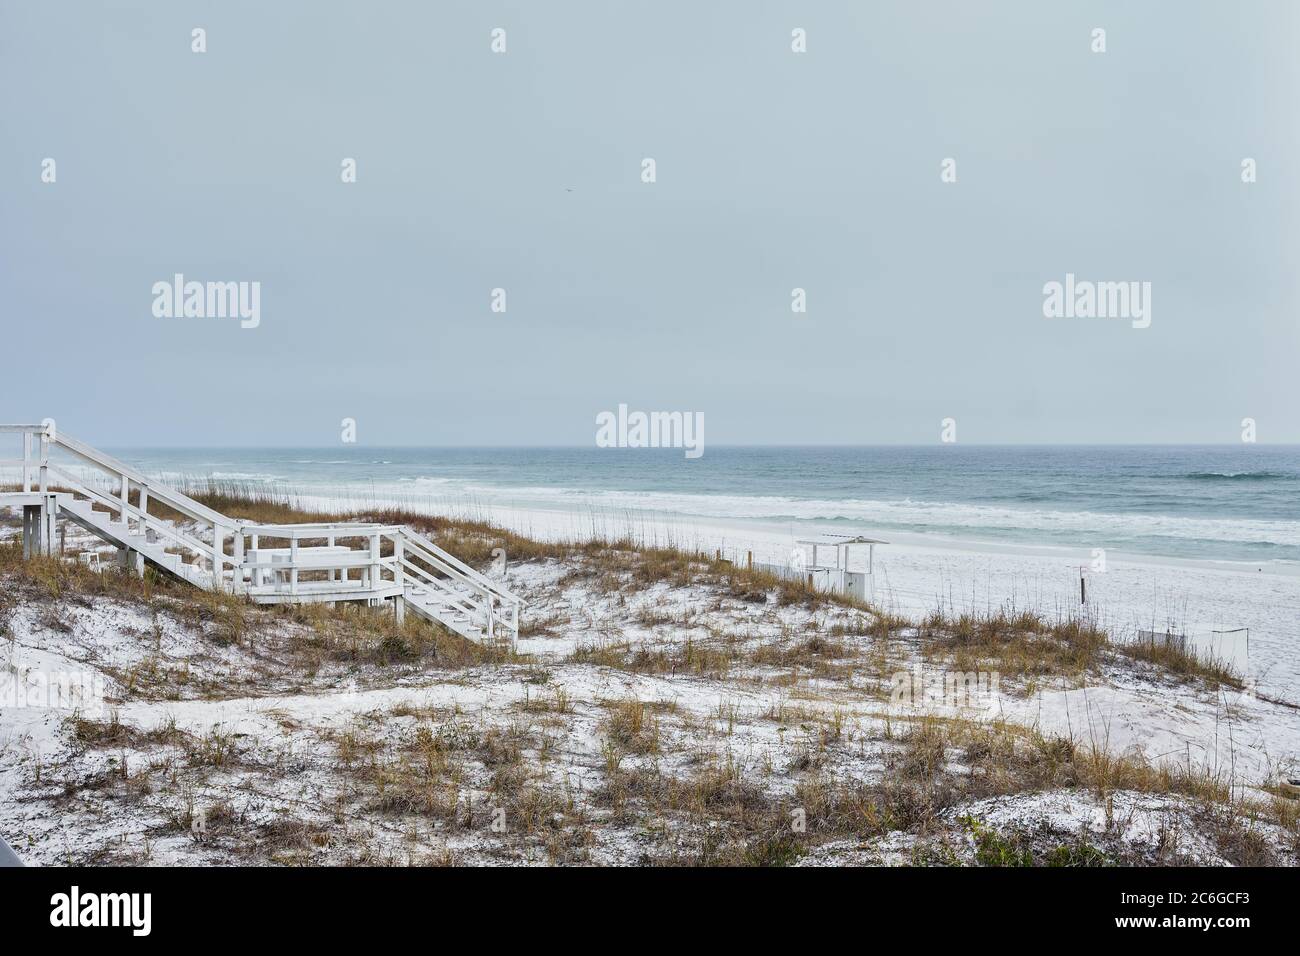 Bianco su bianco. La scalinata in legno sulle dune costiere di Destin, Florida, conduce alla luminosa spiaggia di sabbia bianca e alle acque verdi pallidi del Golfo del Messico. Foto Stock